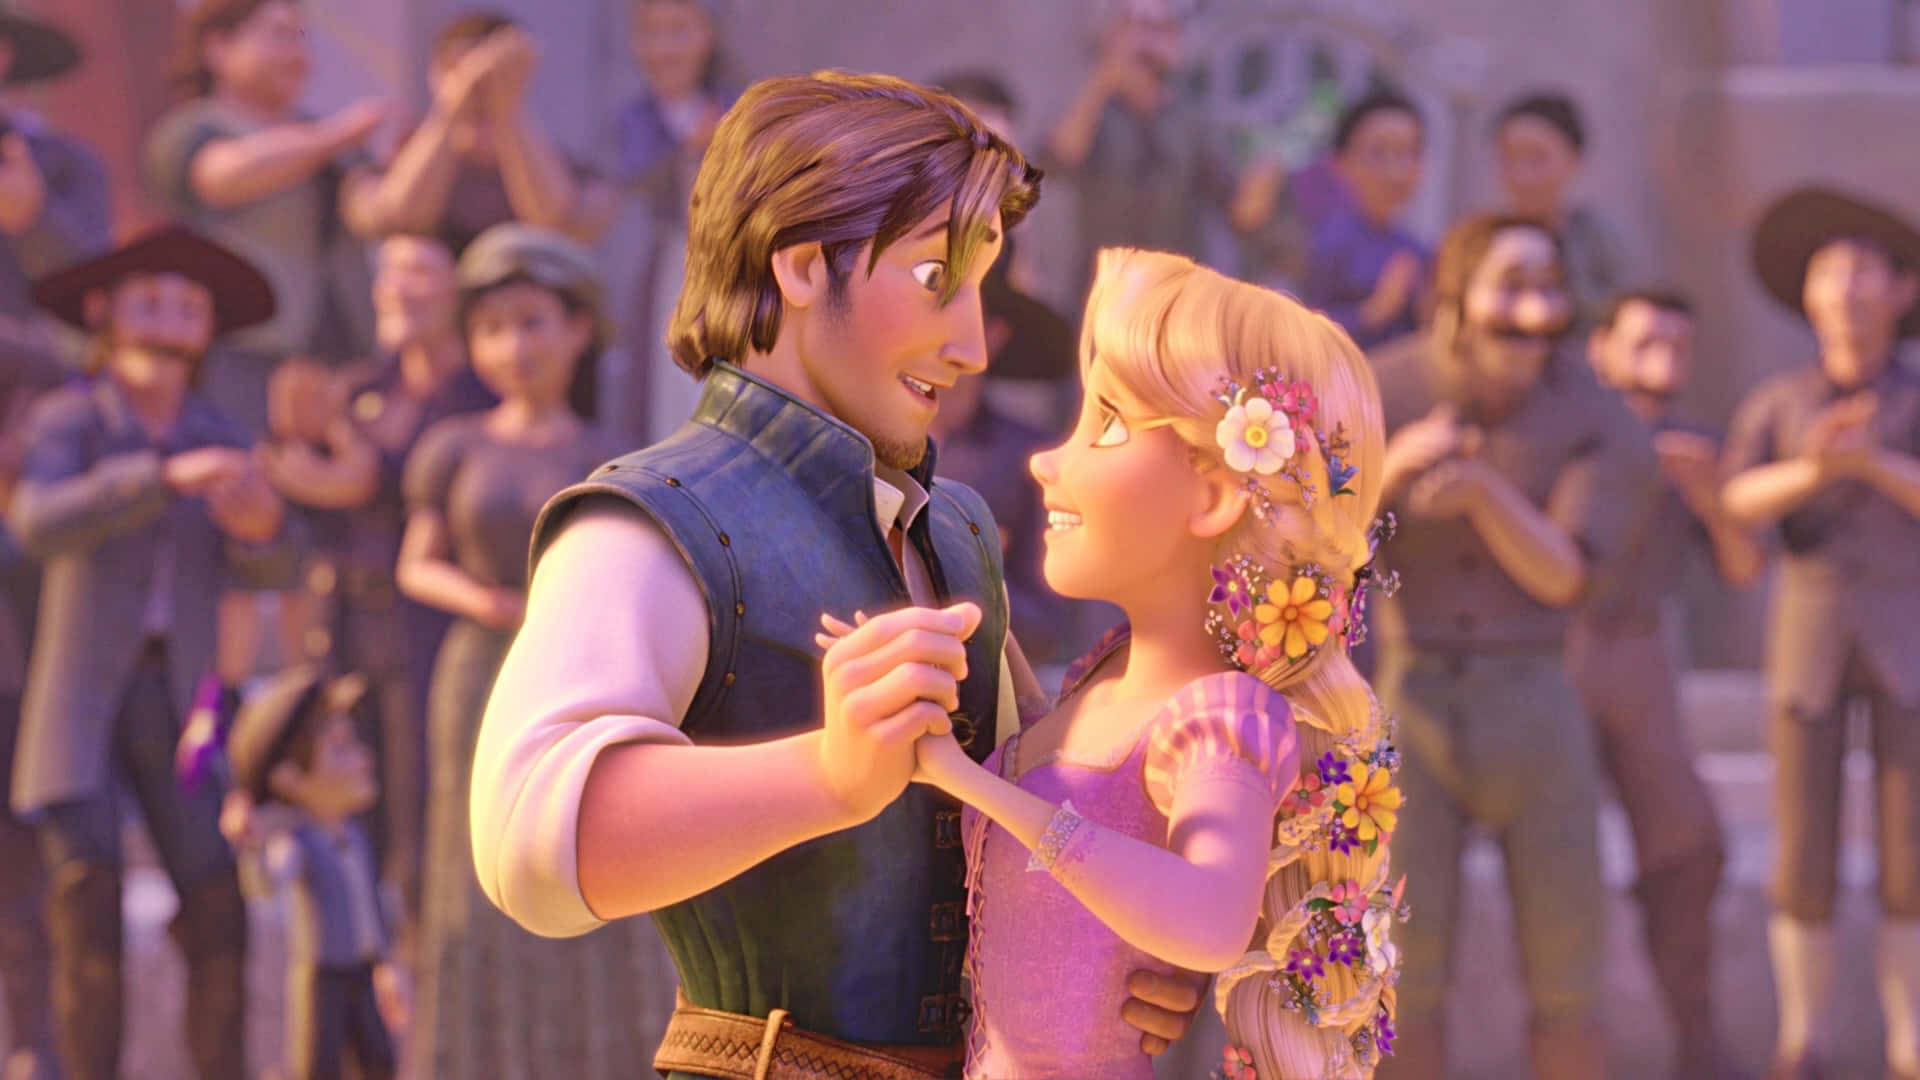 Rapunzelomfamnar Sin Frihet I Den Nya Filmen Tangled.